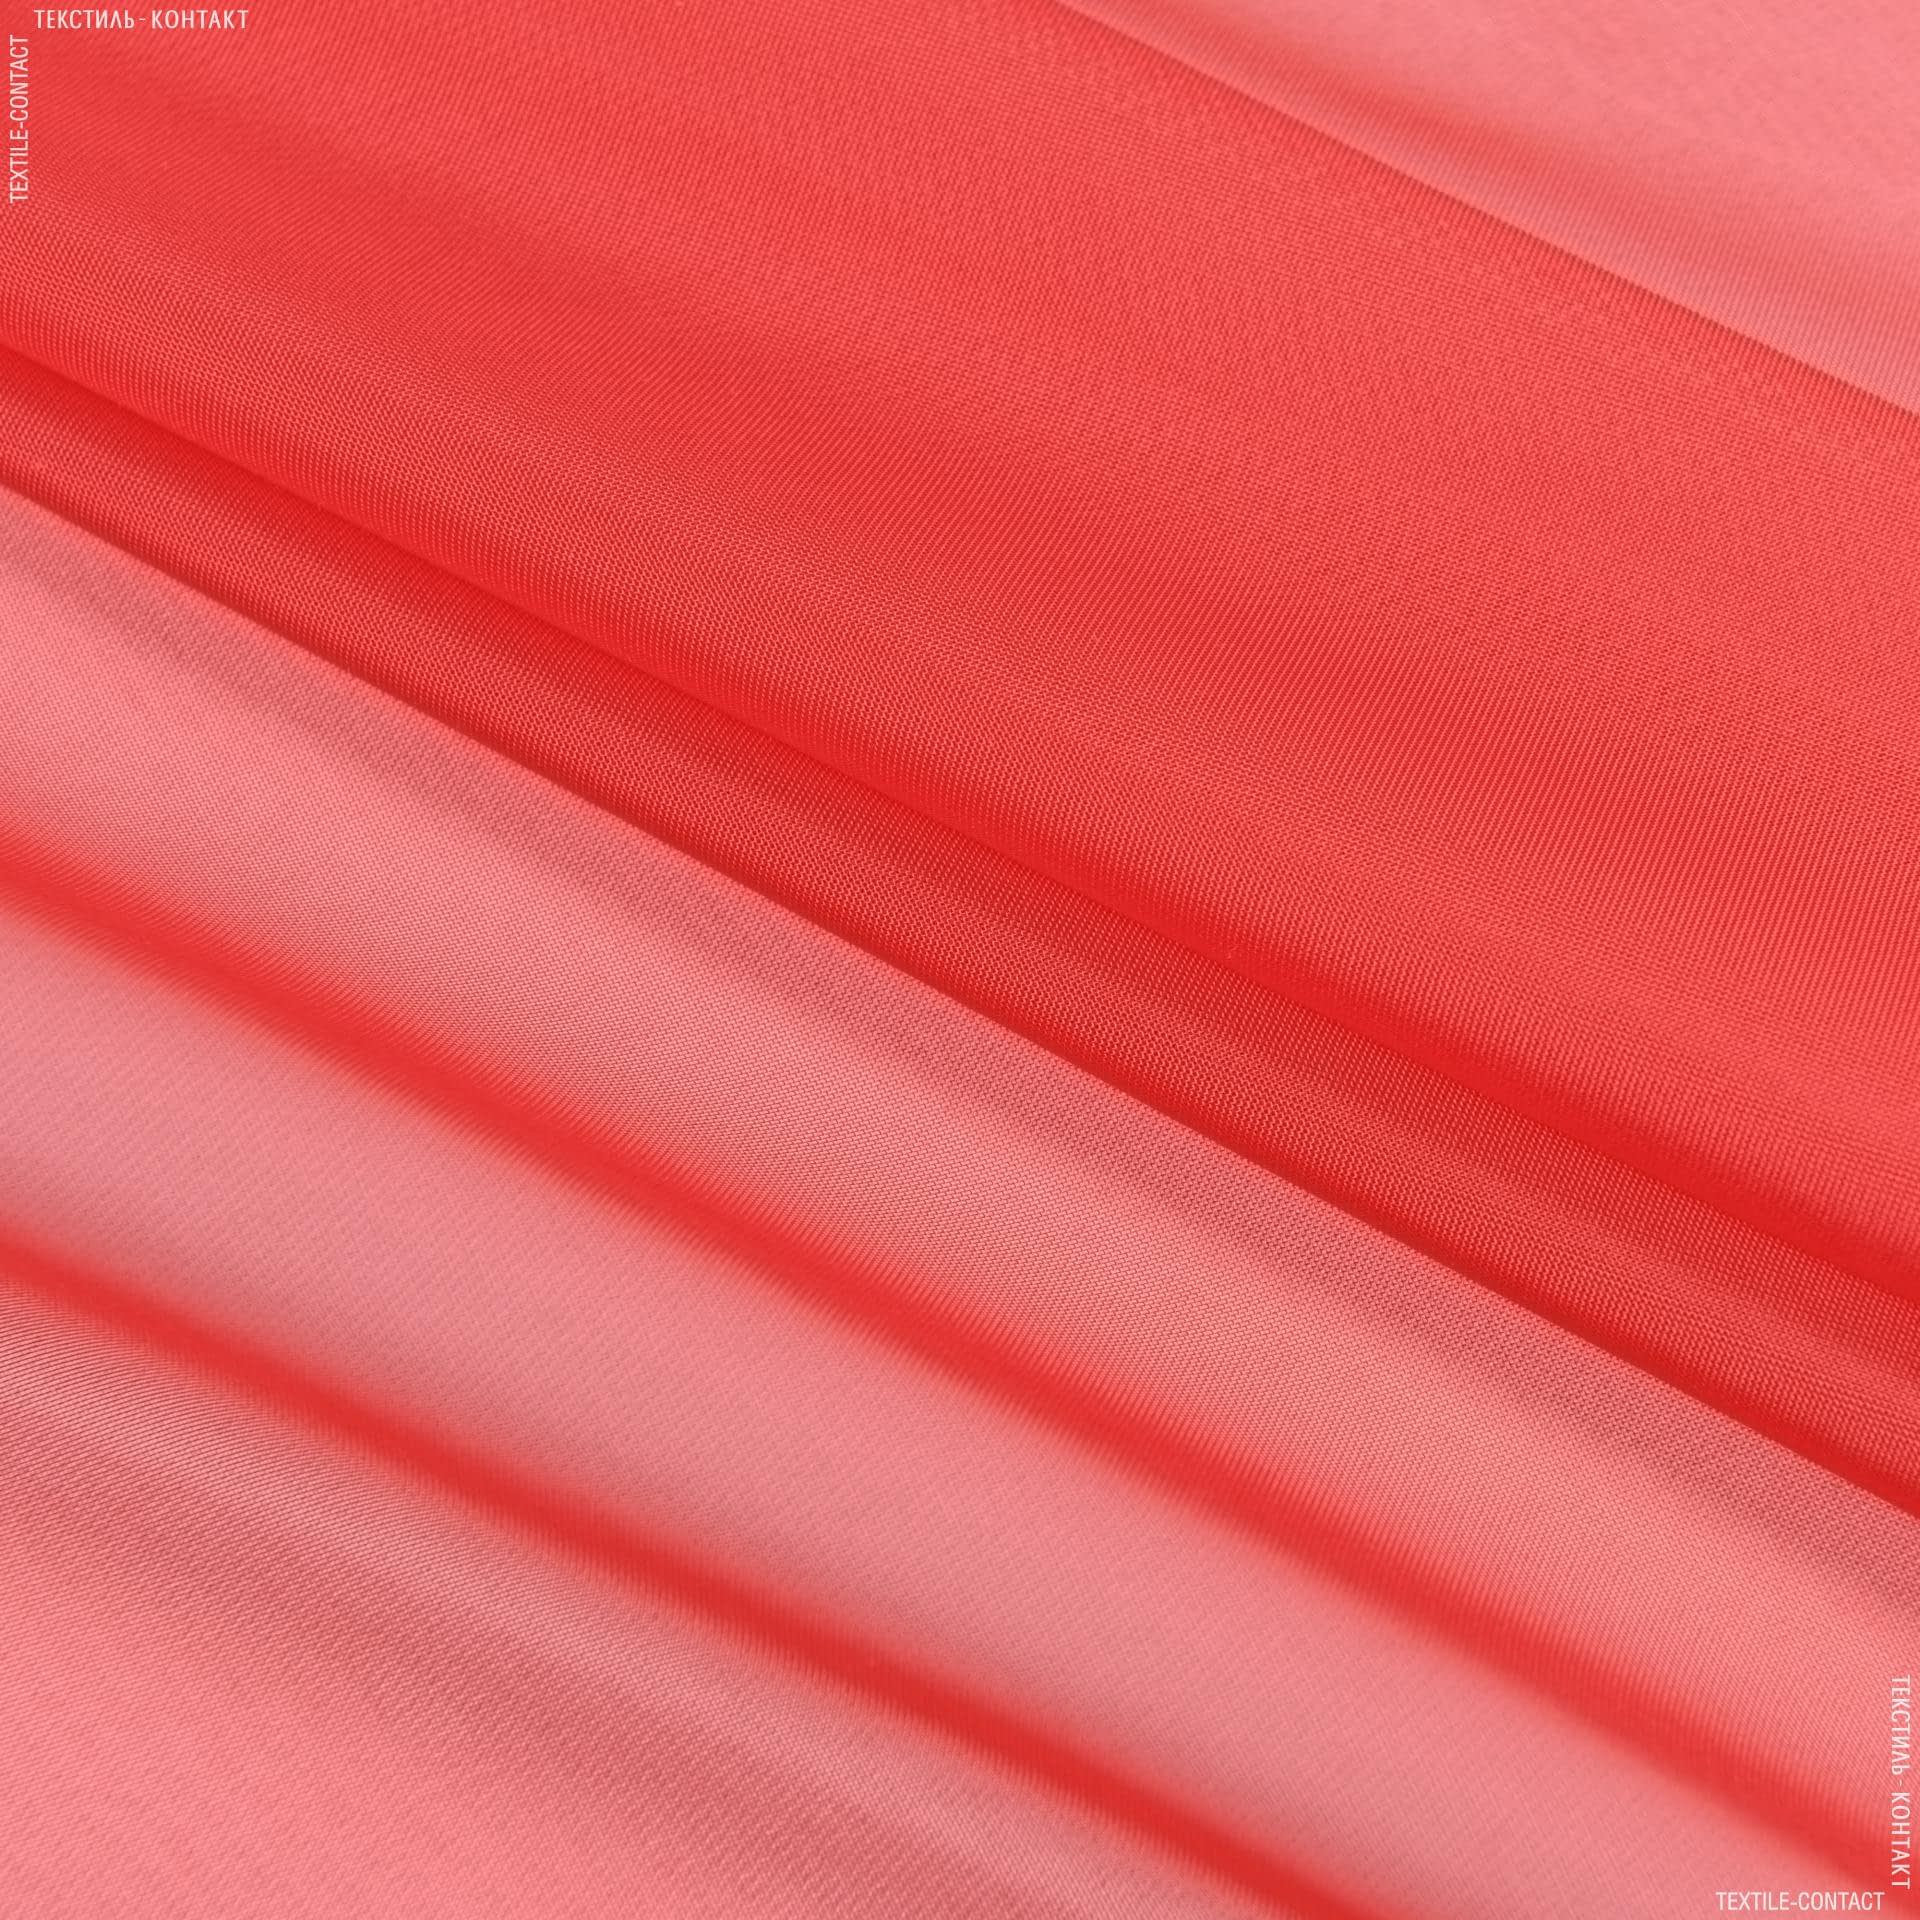 Ткани гардинные ткани - Тюль  вуаль  красный